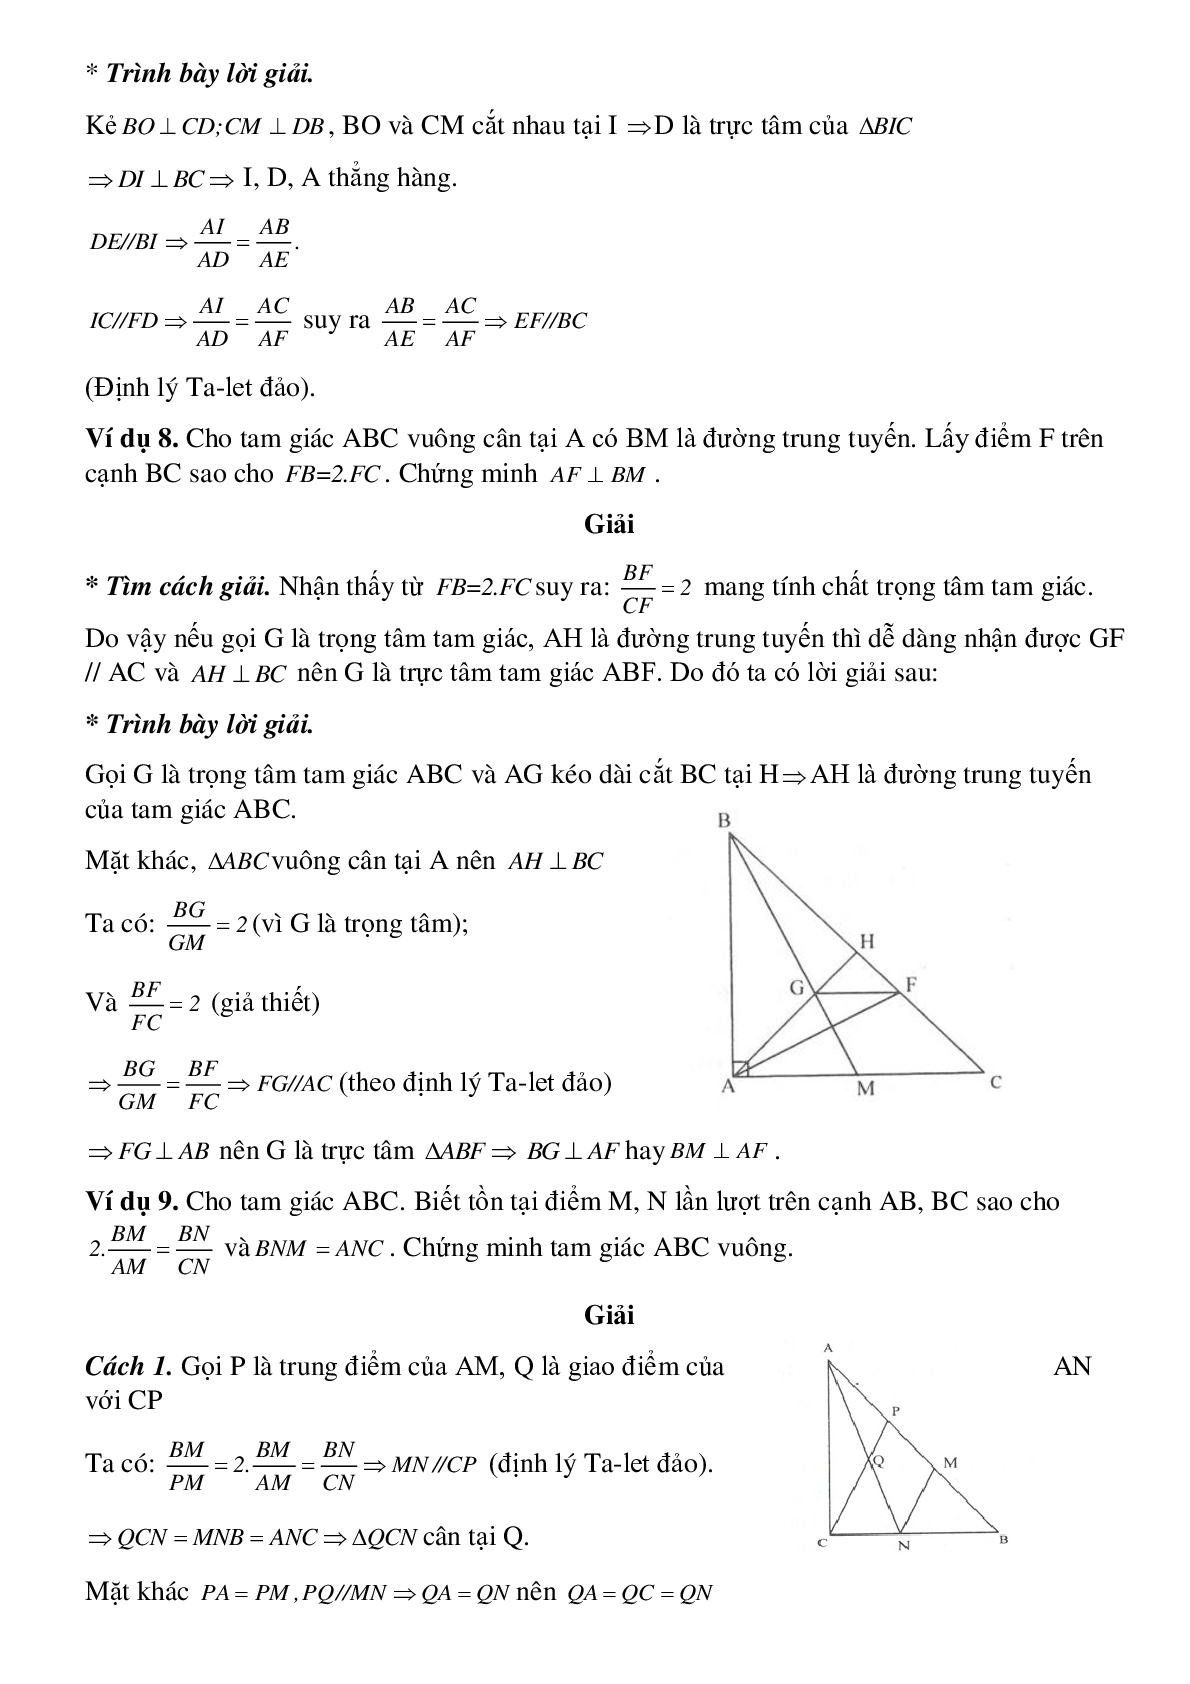 Định lý Ta-lét trong tam giác (trang 7)